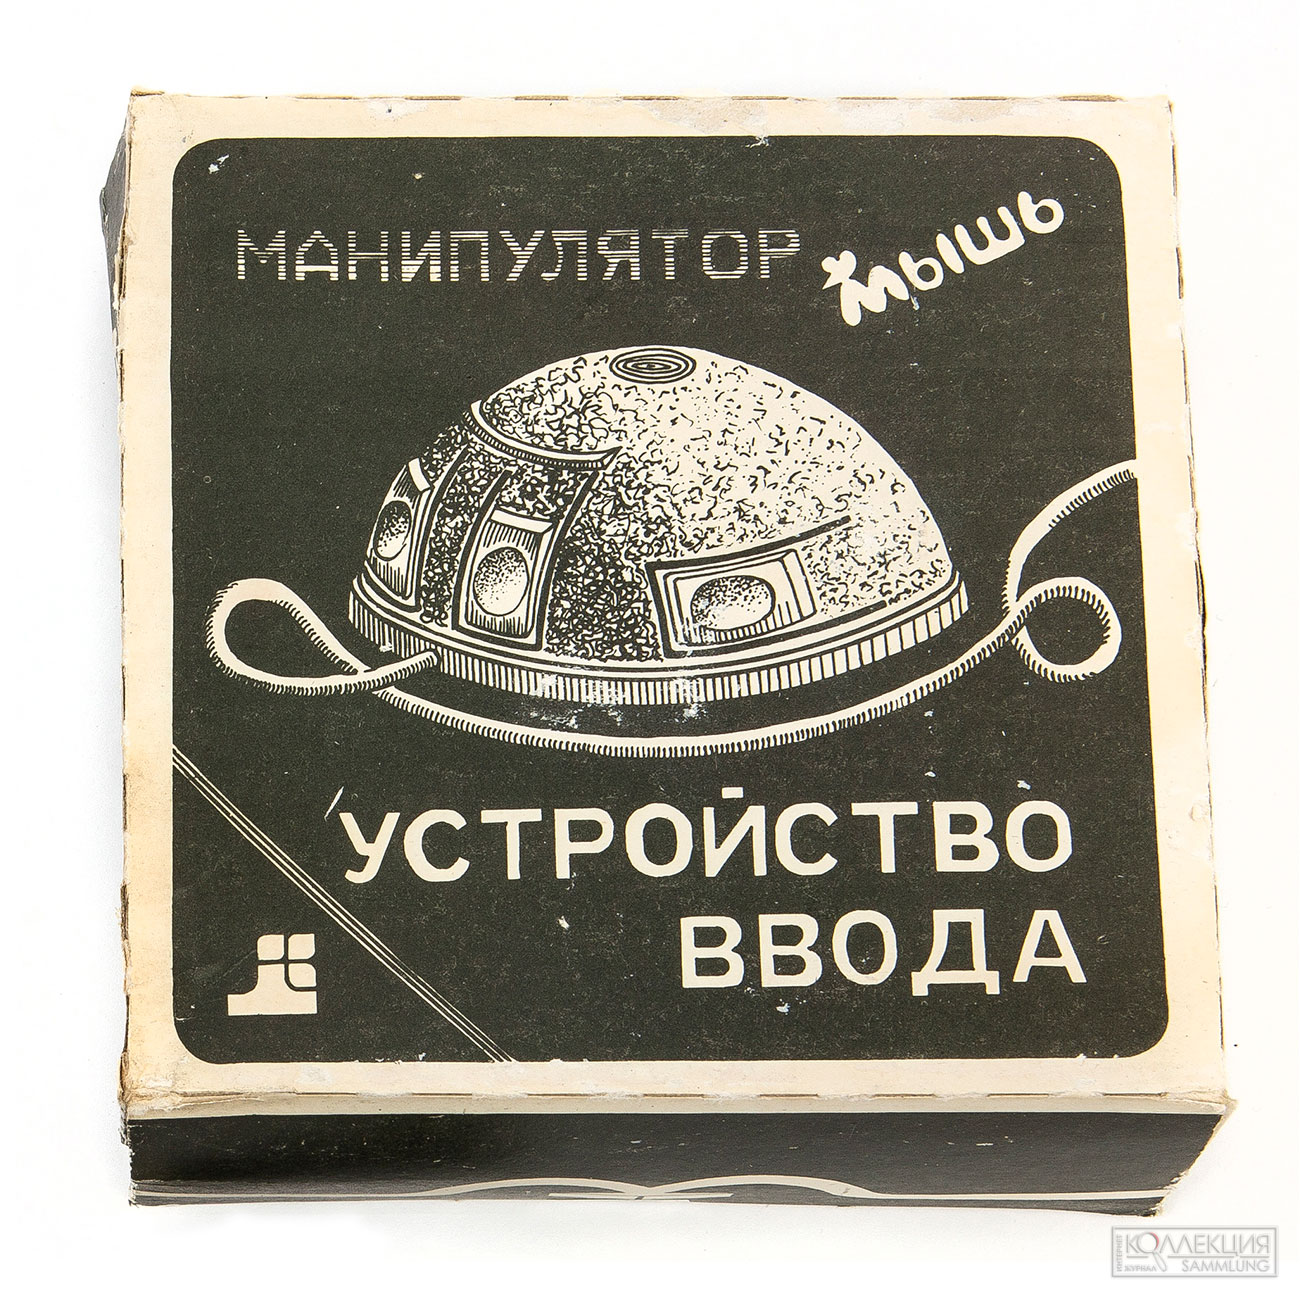 Устройство ввода (компьютерная мышь) НВ03.049.003, ПО «Комета», 1991 год, экспонат предоставлен Яндекс Музеем